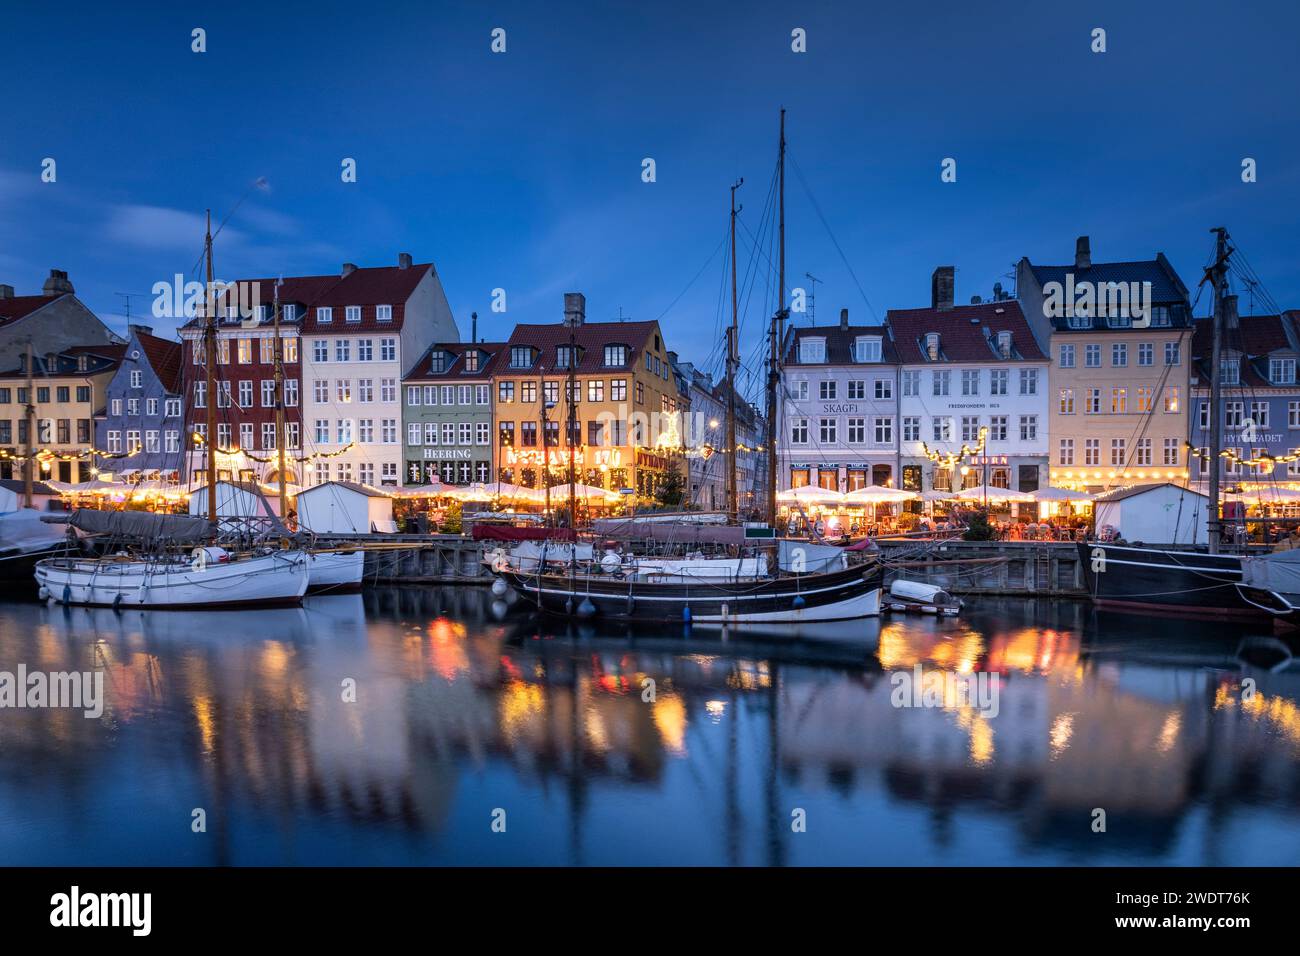 Edifici colorati e barche alte con alberi sul lungomare di Nyhavn al tramonto, canale Nyhavn, Nyhavn, Copenaghen, Danimarca, Europa Foto Stock